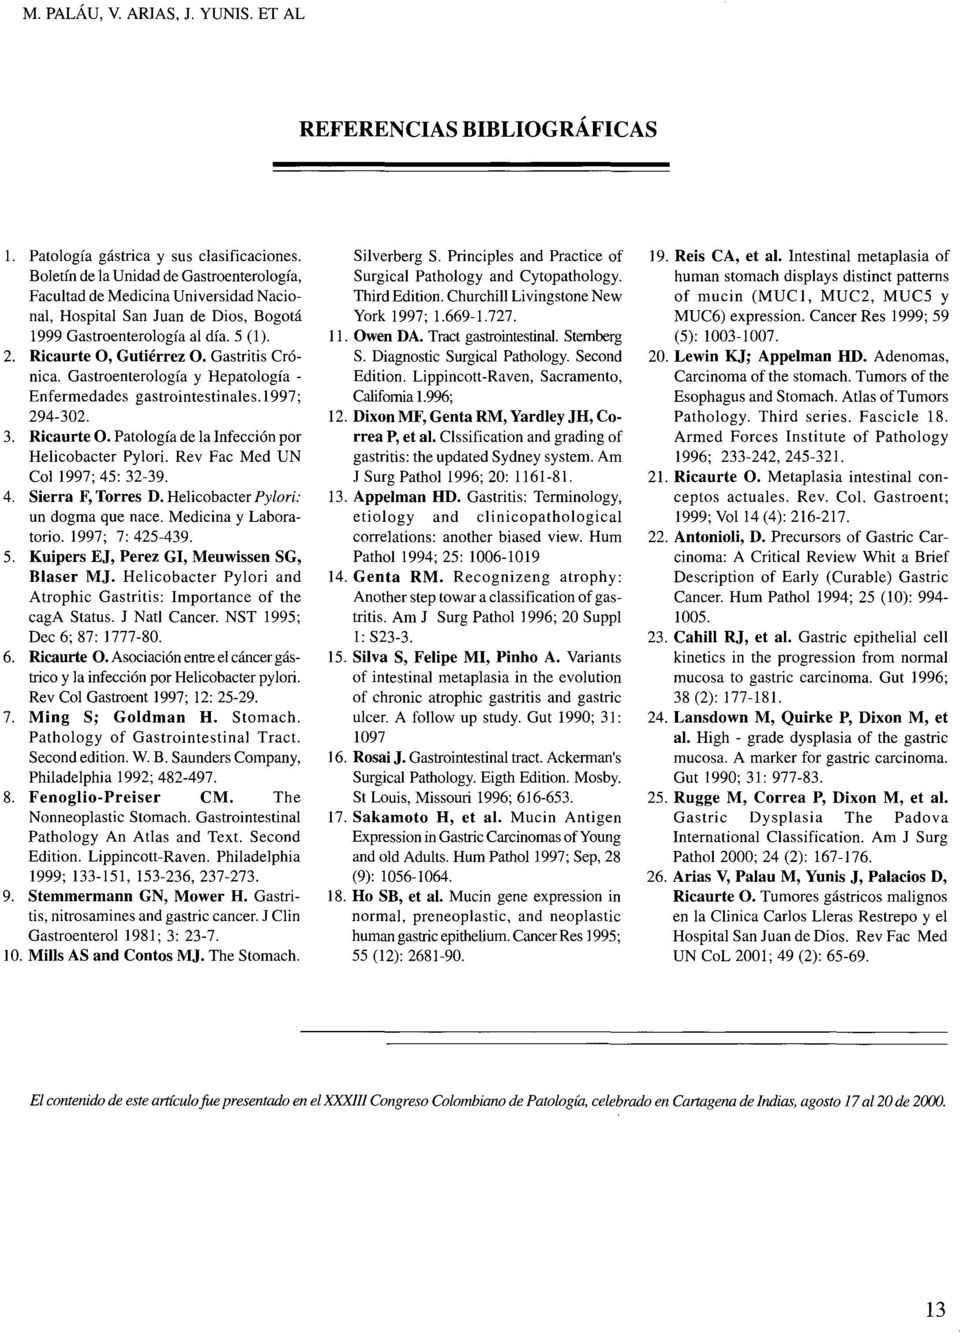 Gastritis Crónica. Gastroenterología y Hepatología - Enfermedades gastrointestinales.1997; 294-302. 3. Ricaurte O. Patología de la Infección por Helicobacter Pylori.